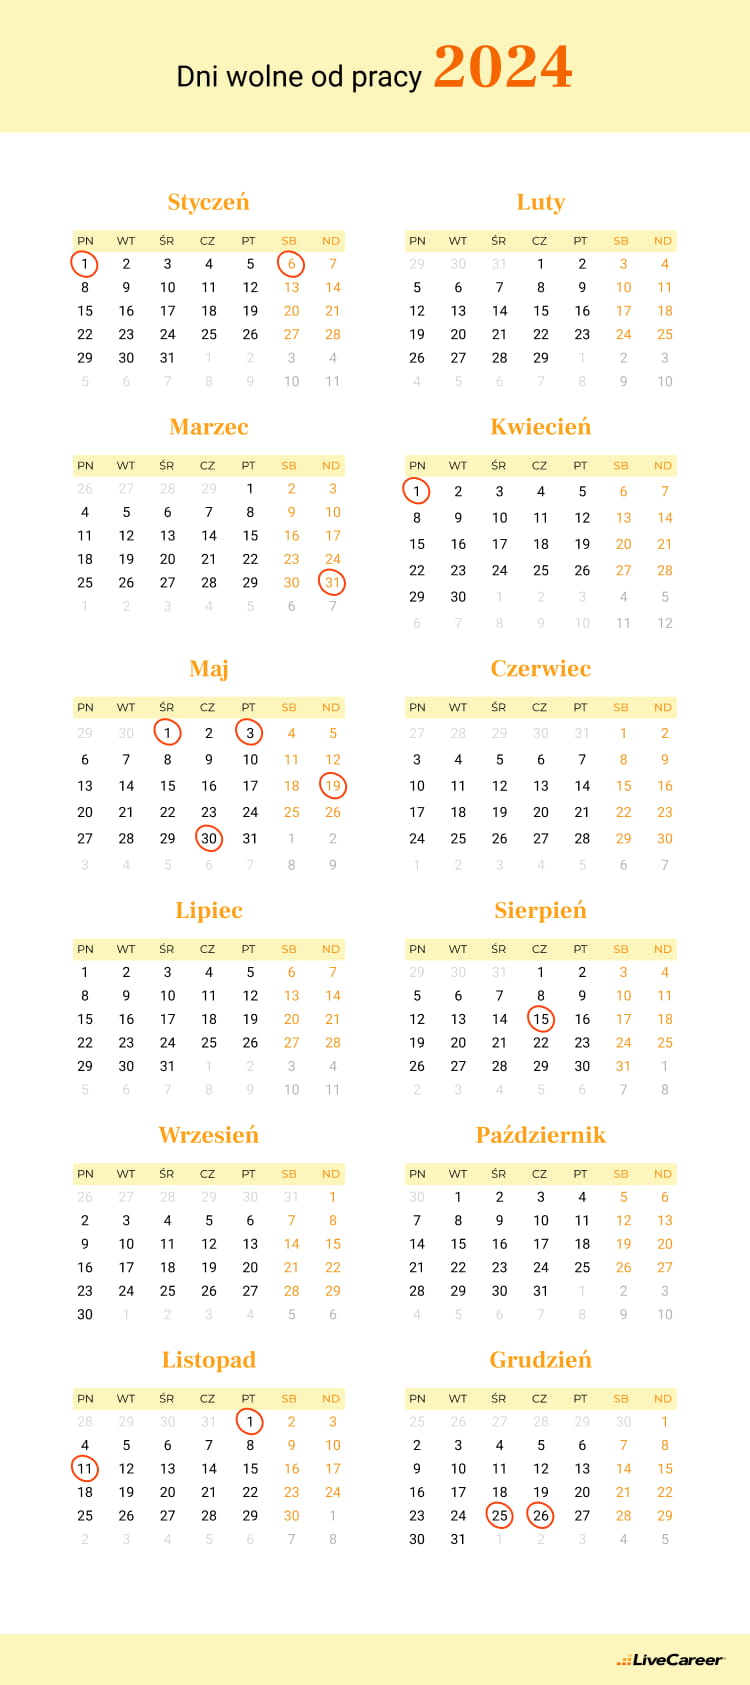 Dni wolne od pracy 2024 — kalendarz. Kiedy są święta?